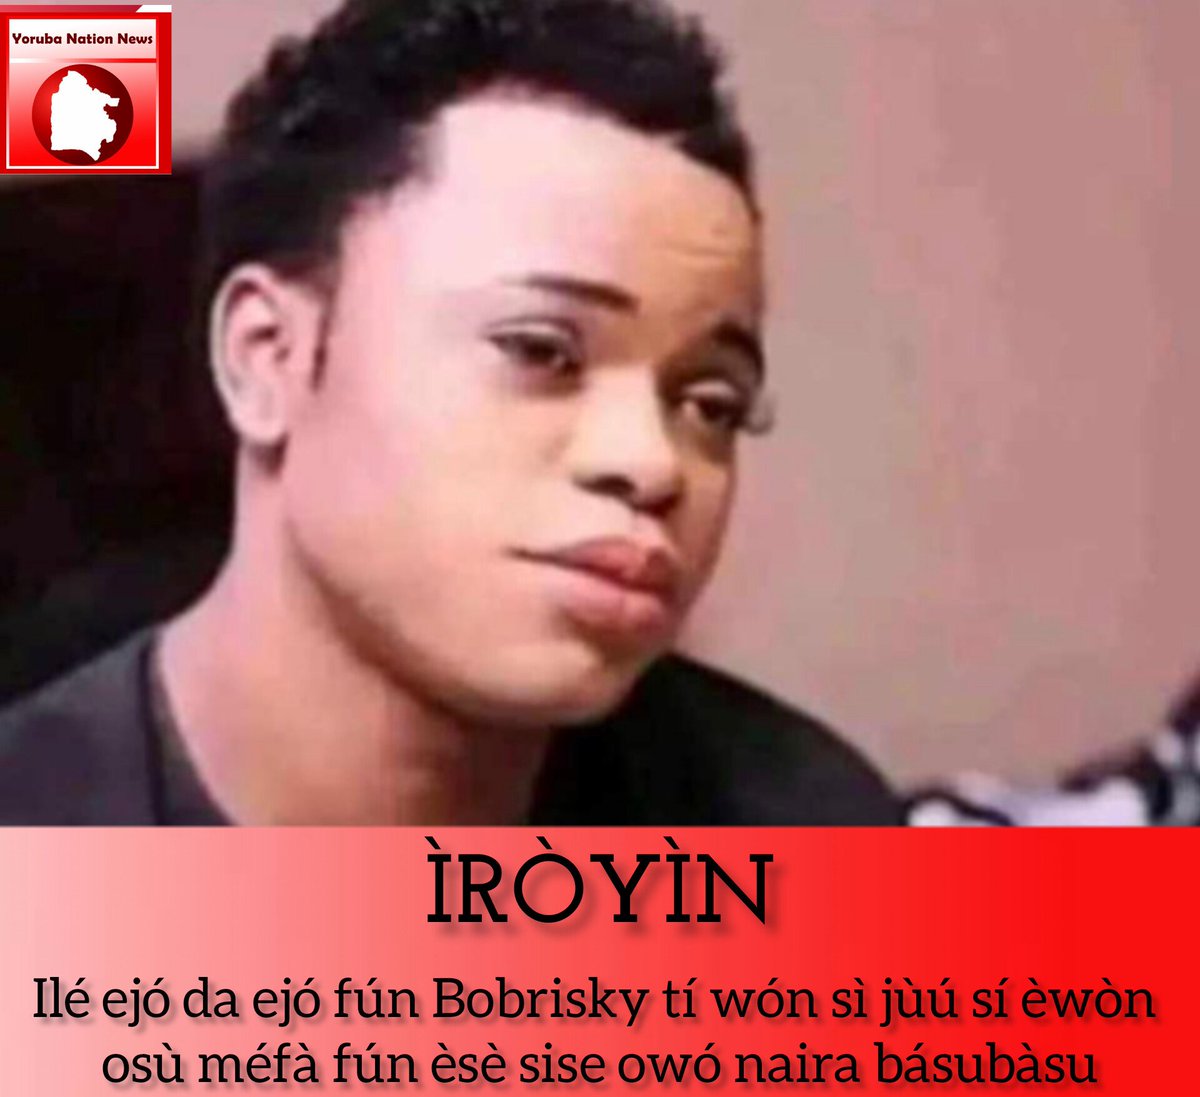 ÌRÒYÌN: Ilé ejó da ejó fún Bobrisky tí wón sì jùú sí èwòn osù méfà fún èsè sise owó naira básubàsu #YorubaNationews #YorubaNation #Yoruba #News